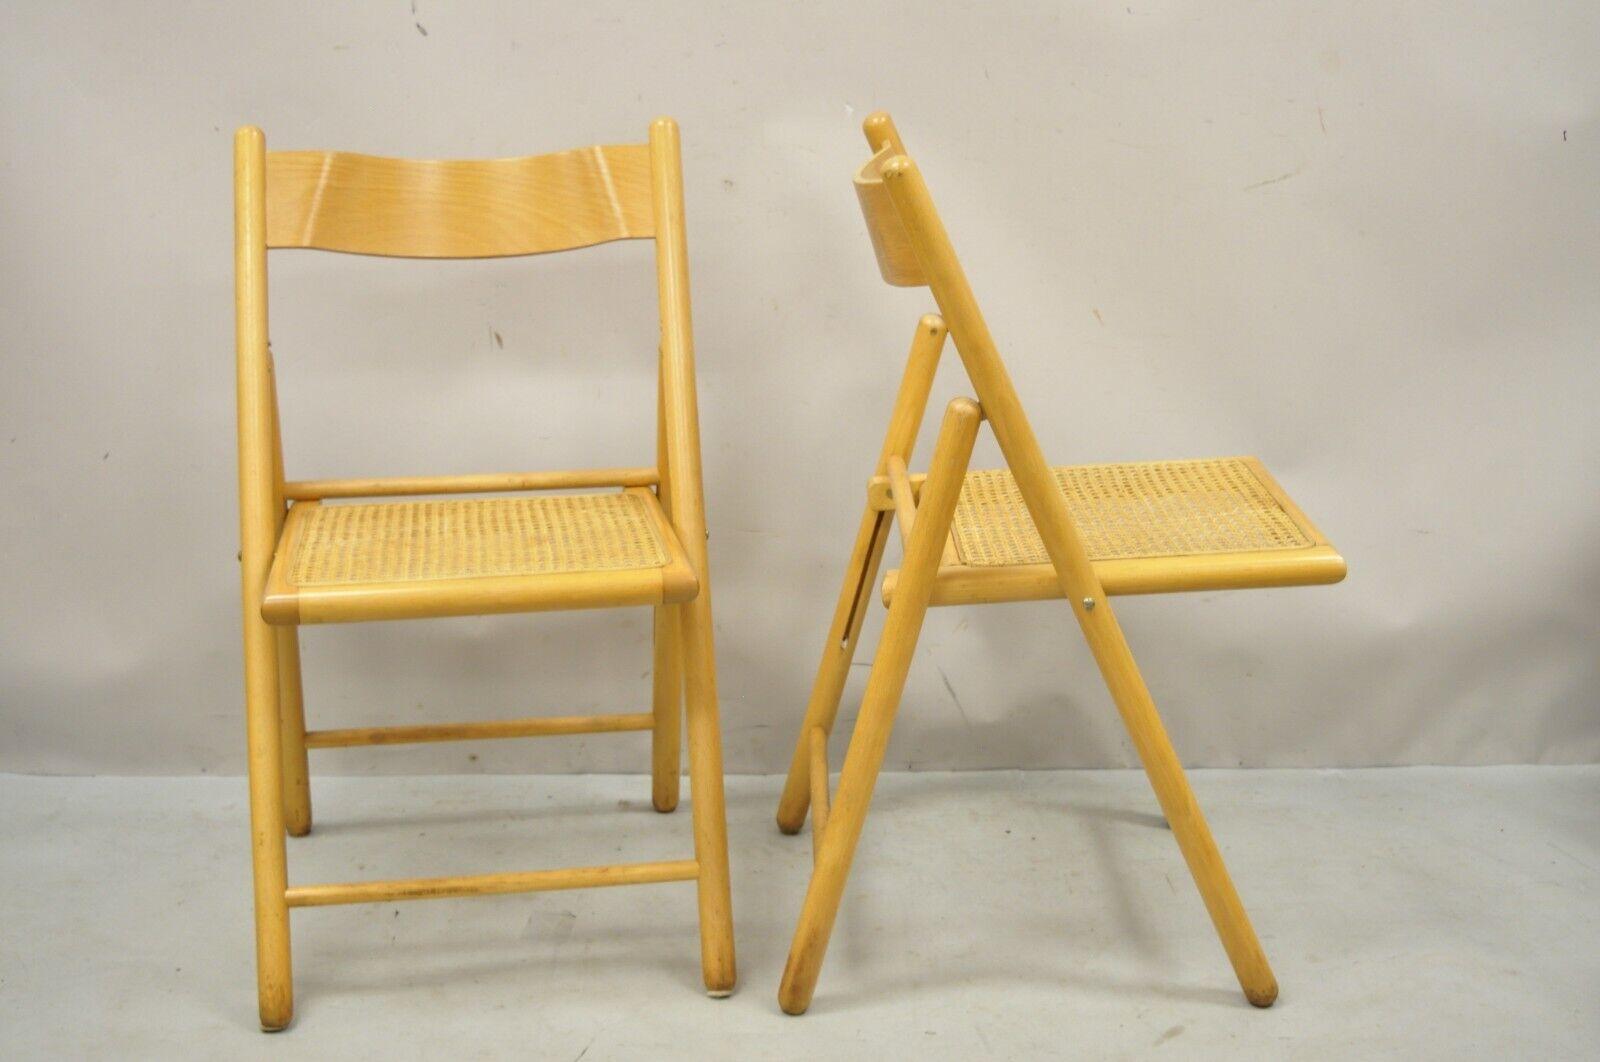 Vintage Habitat England Bentwood Cane Rattan Folding Chairs - a Pair. L'article se caractérise par un dossier en bois courbé, une assise en rotin, un beau grain de bois, une très belle paire d'antiquités, des lignes modernes épurées. Circa Mid to